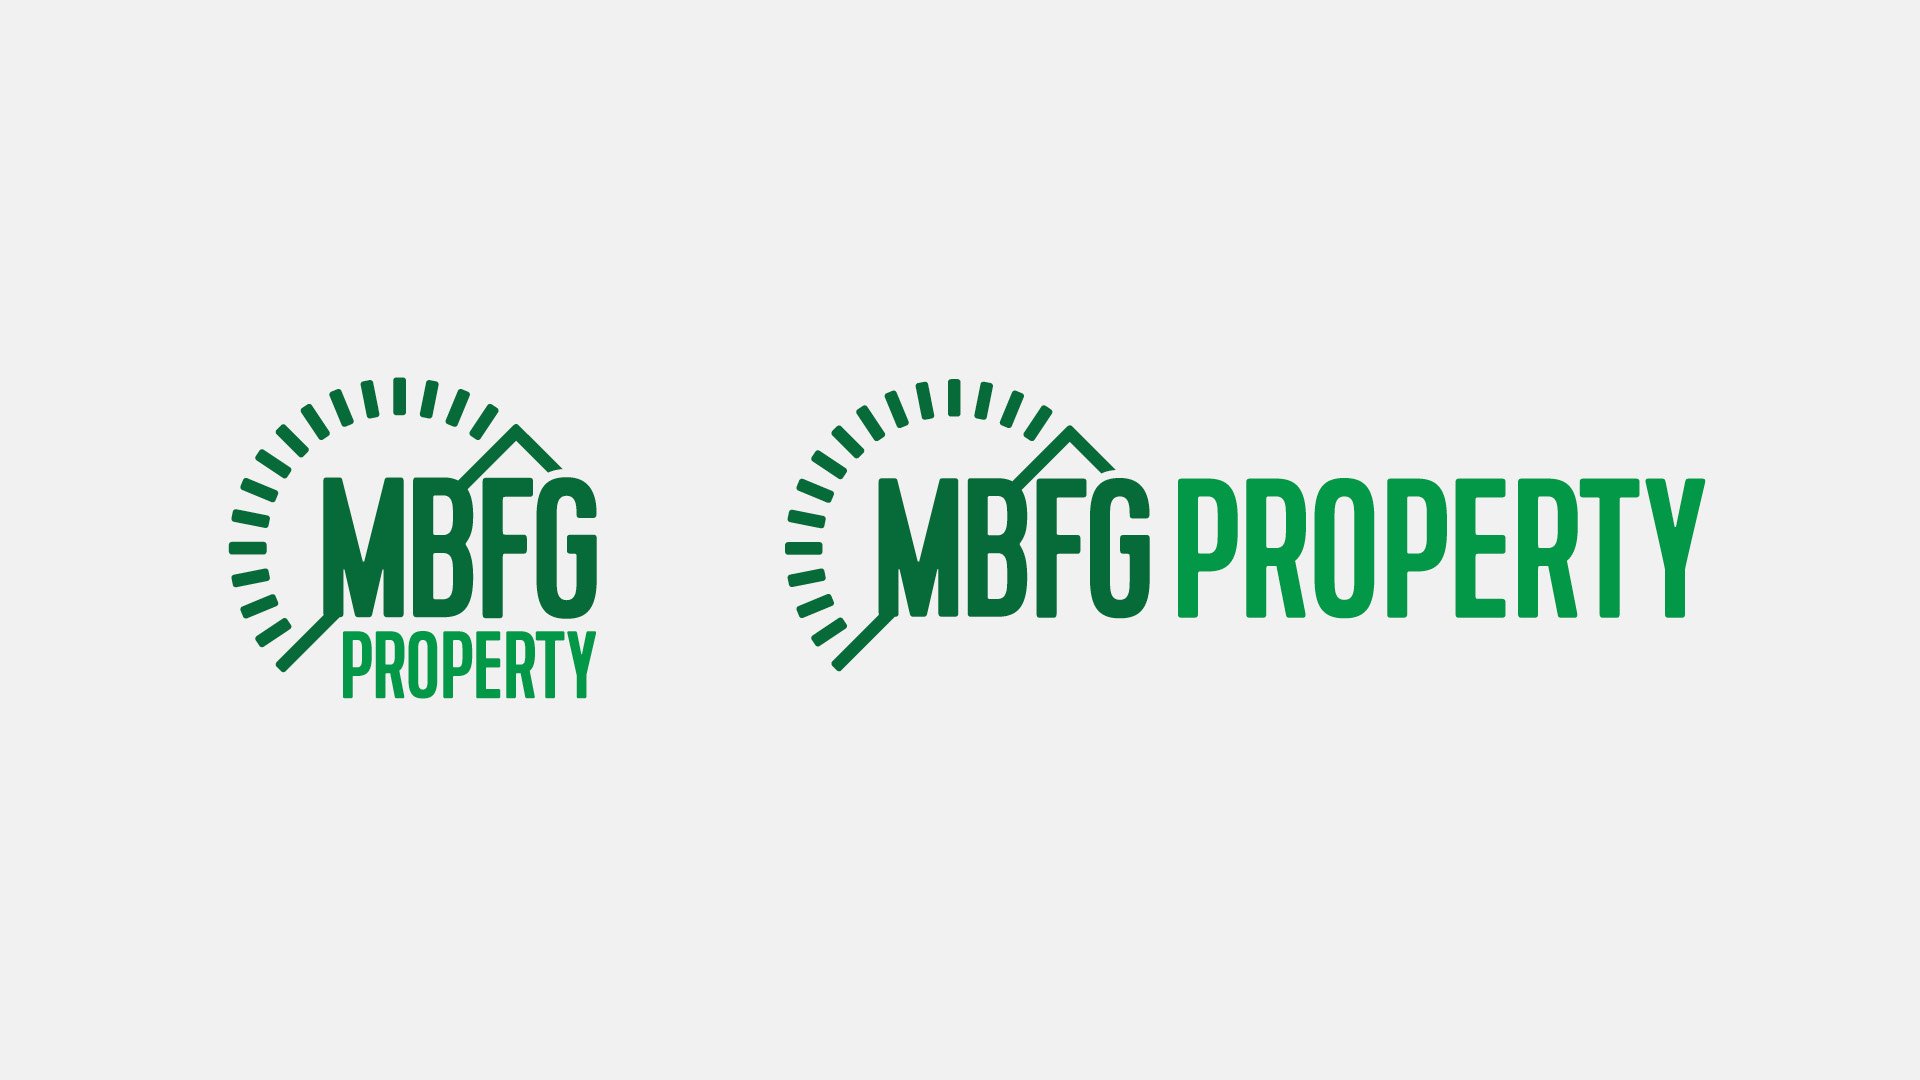 MBFG Property Case Study9.jpg